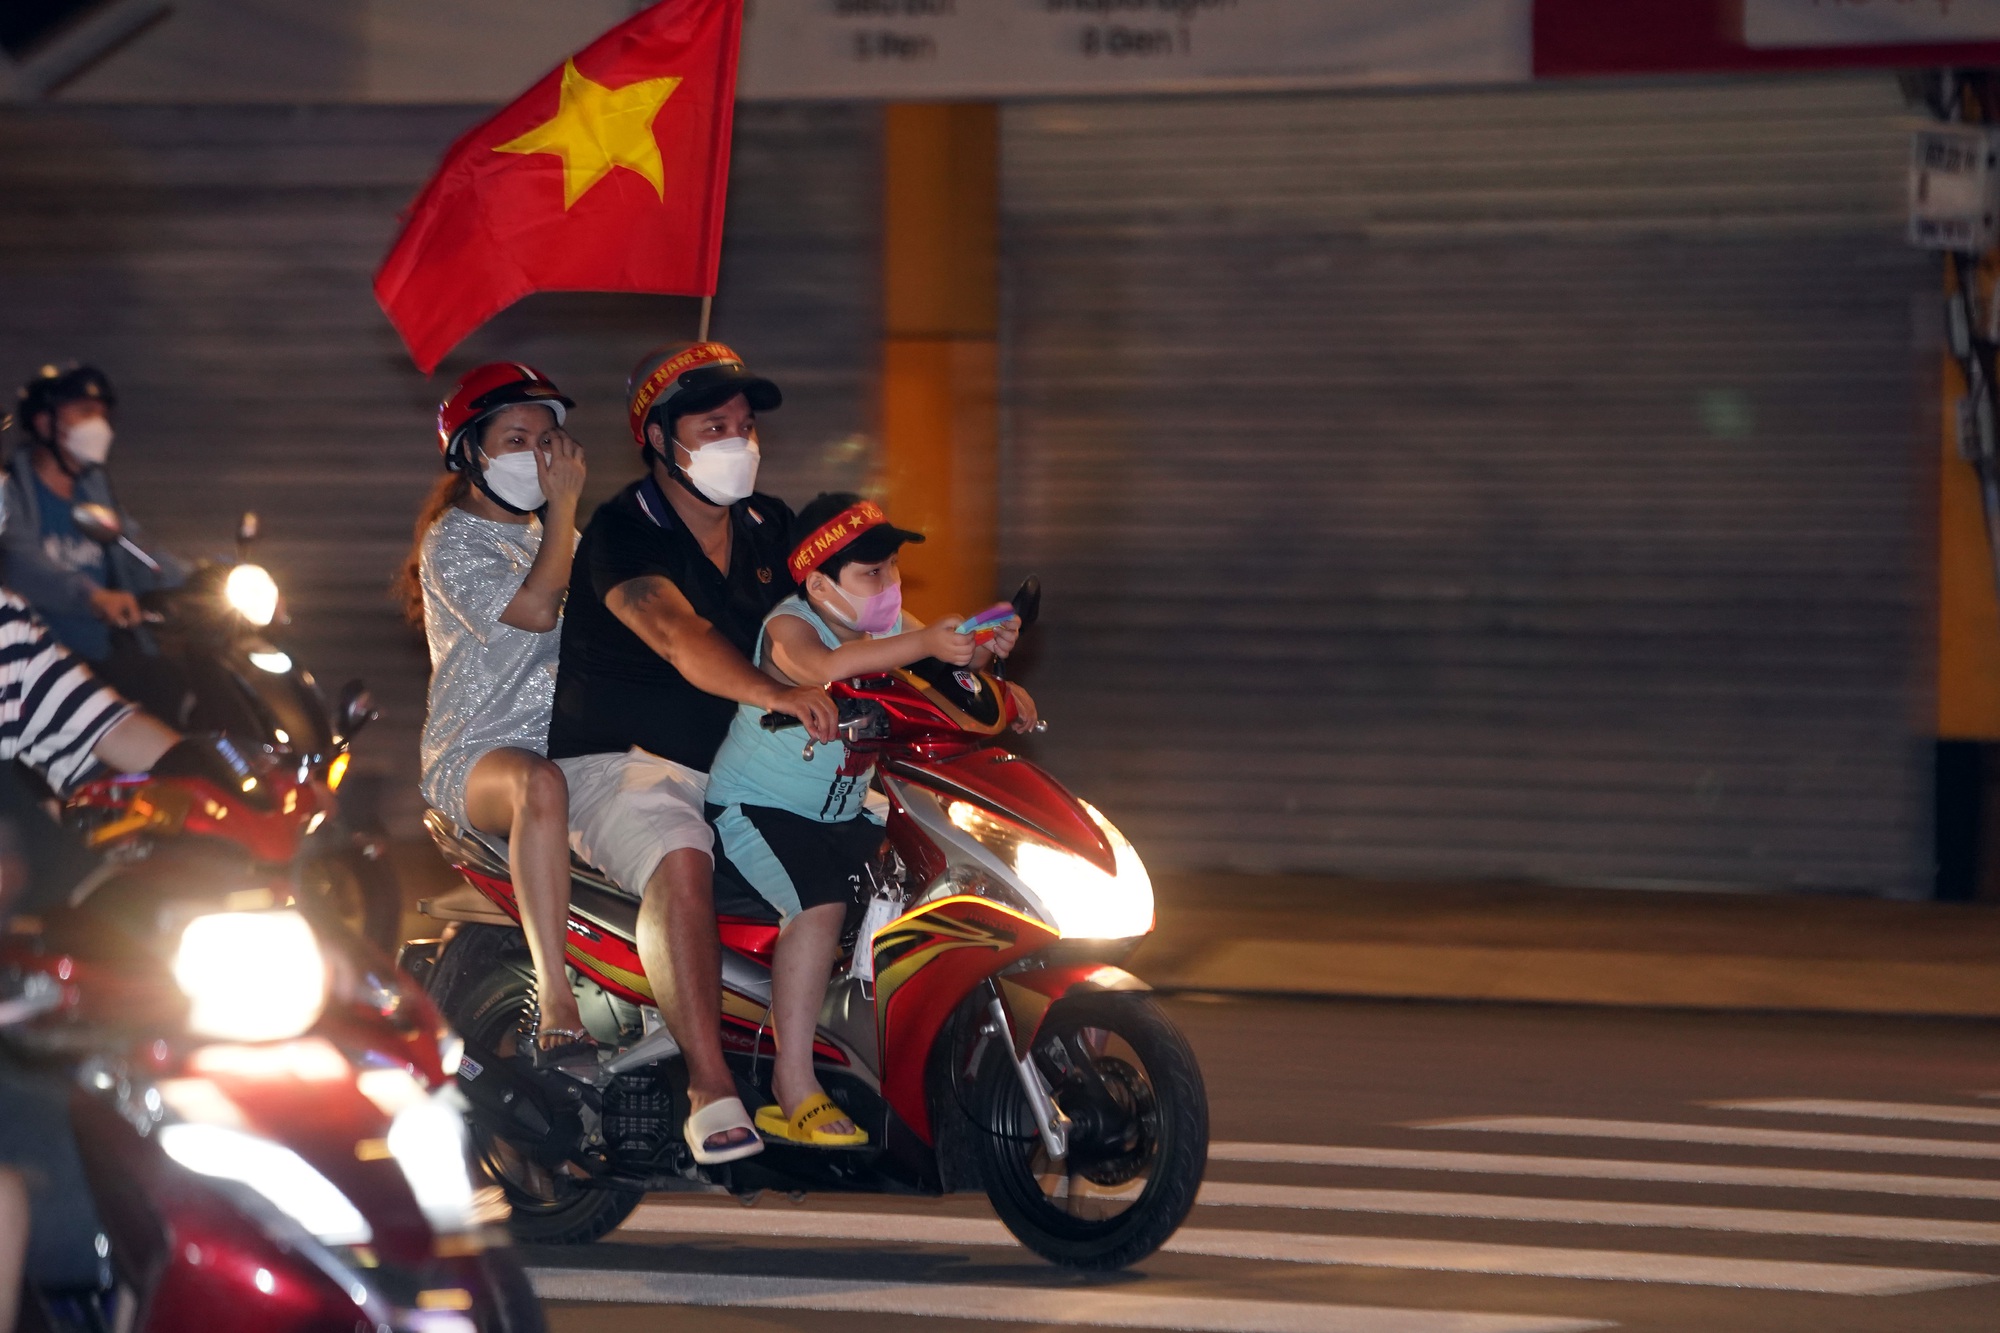 Trung tâm TP HCM ngập tràn sắc đỏ sau chức vô địch của U23 Việt Nam - Ảnh 8.